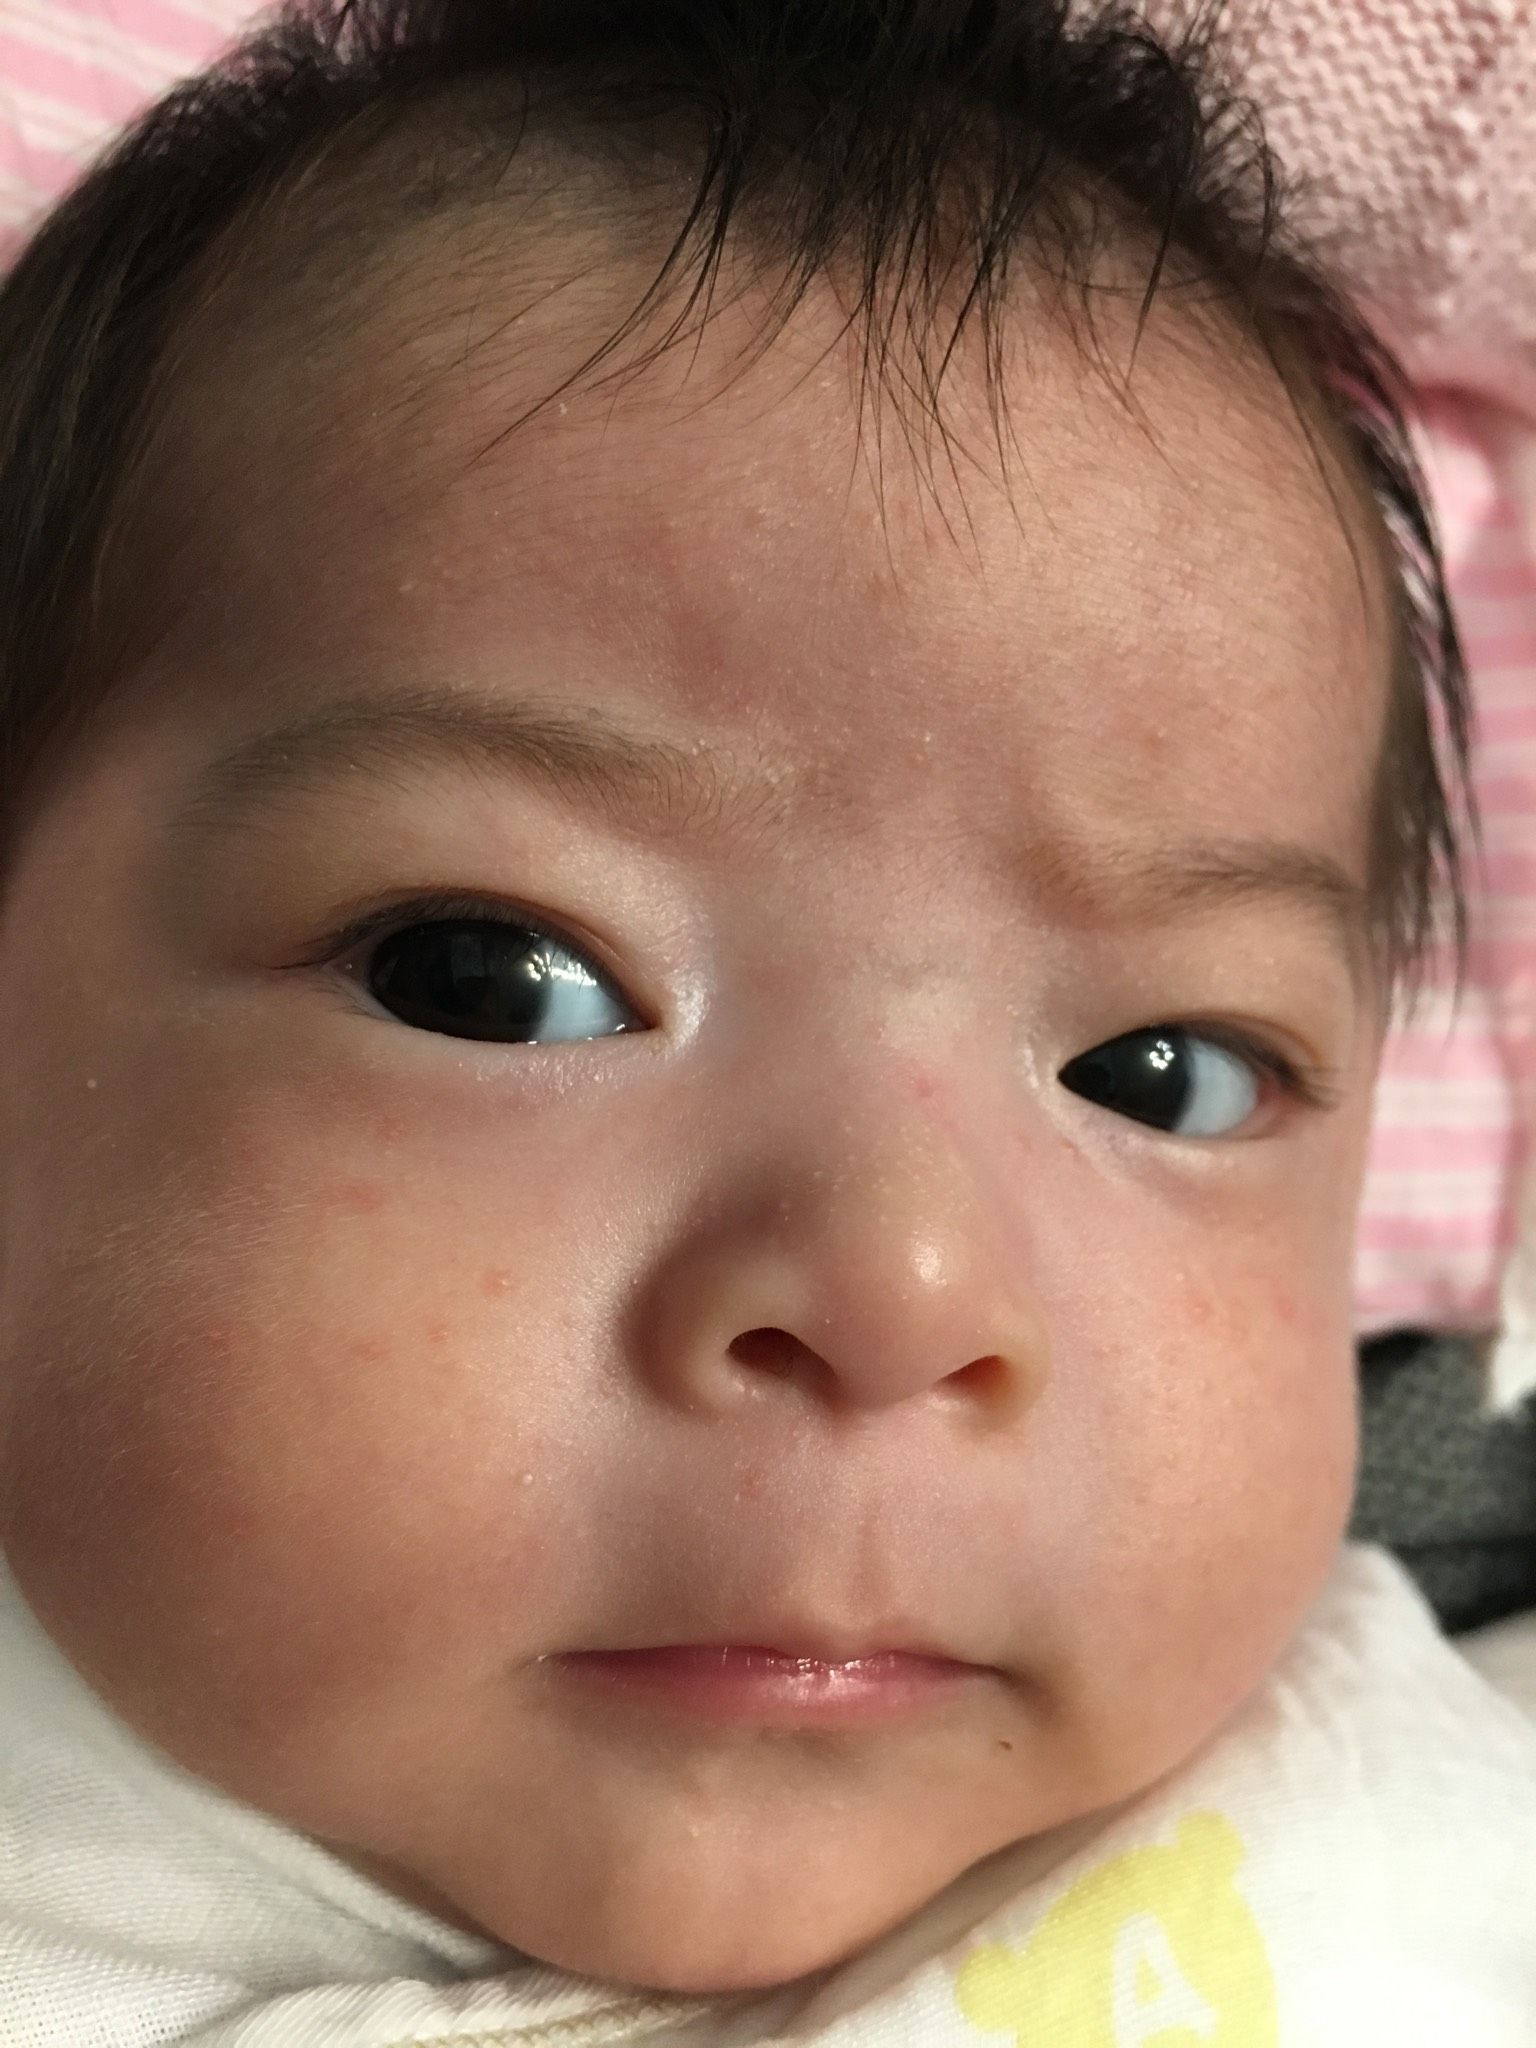 還沒兩個月的寶寶 臉上有一粒一粒的